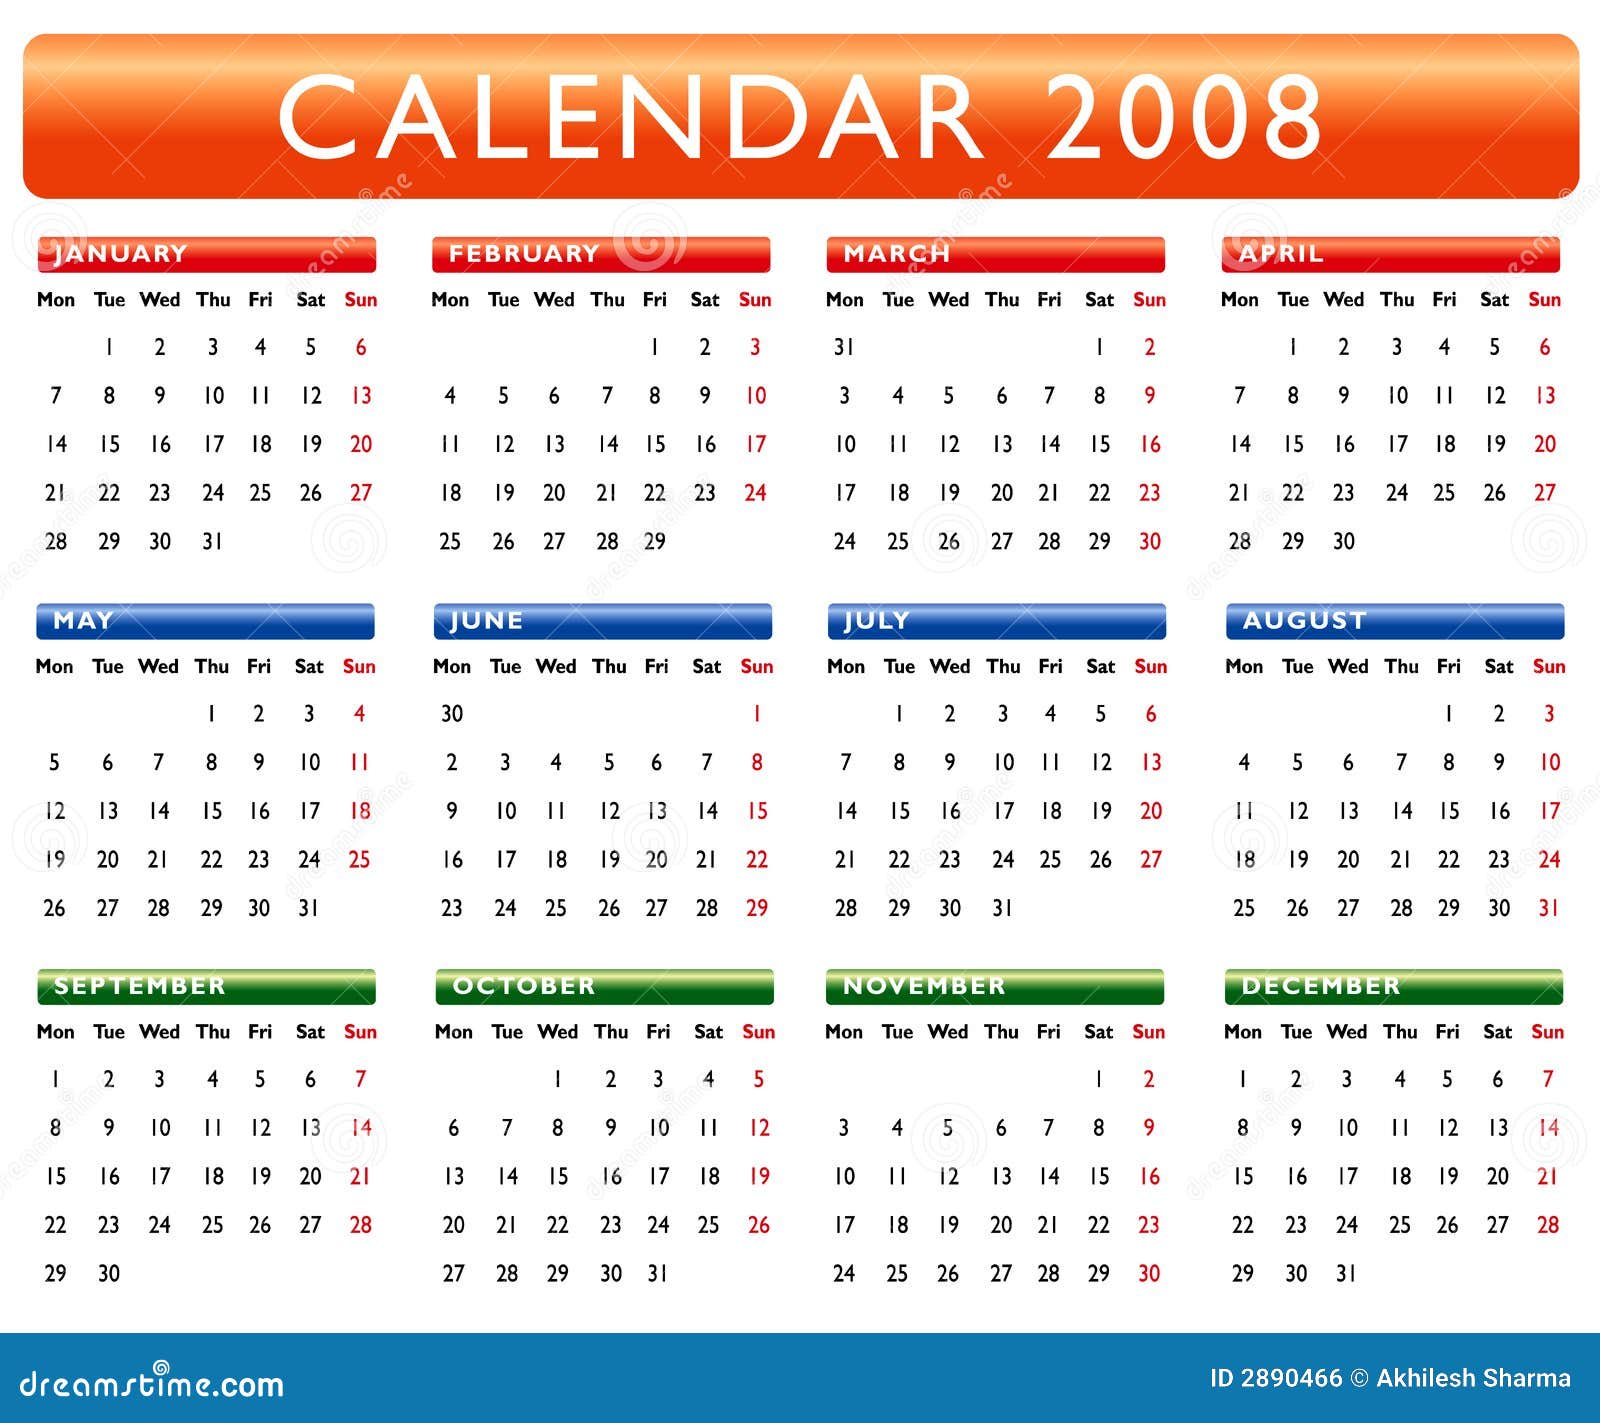  Kalender 2008  stock illustratie Illustratie bestaande uit 